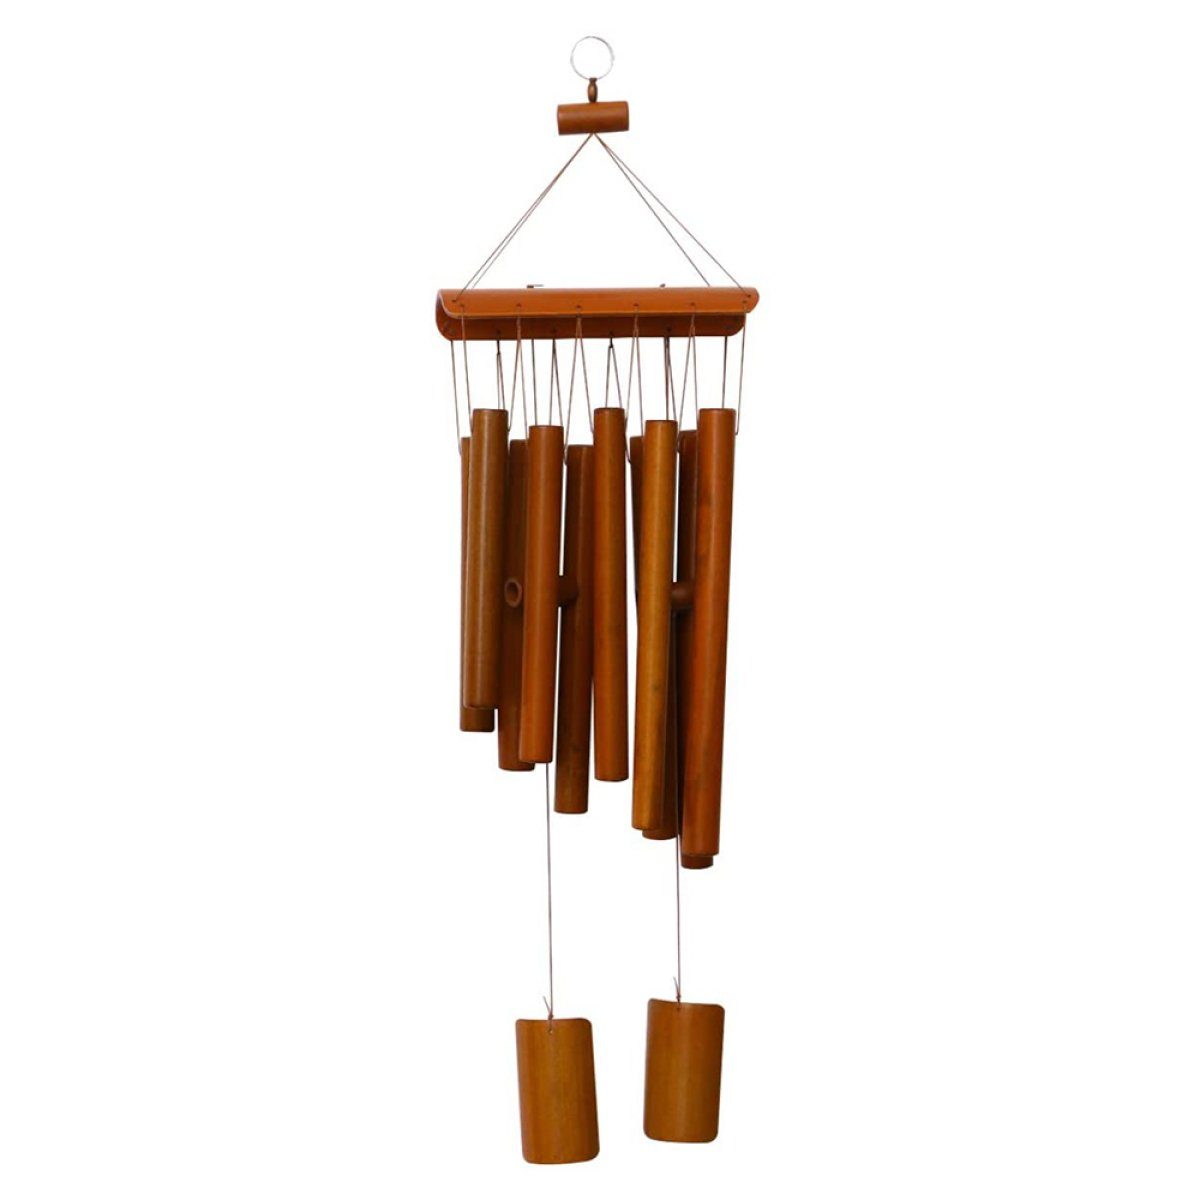 Rwoythk Windspiel Bambus-Windspiel aus Holz, zweireihig, groß, für drinnen und draußen